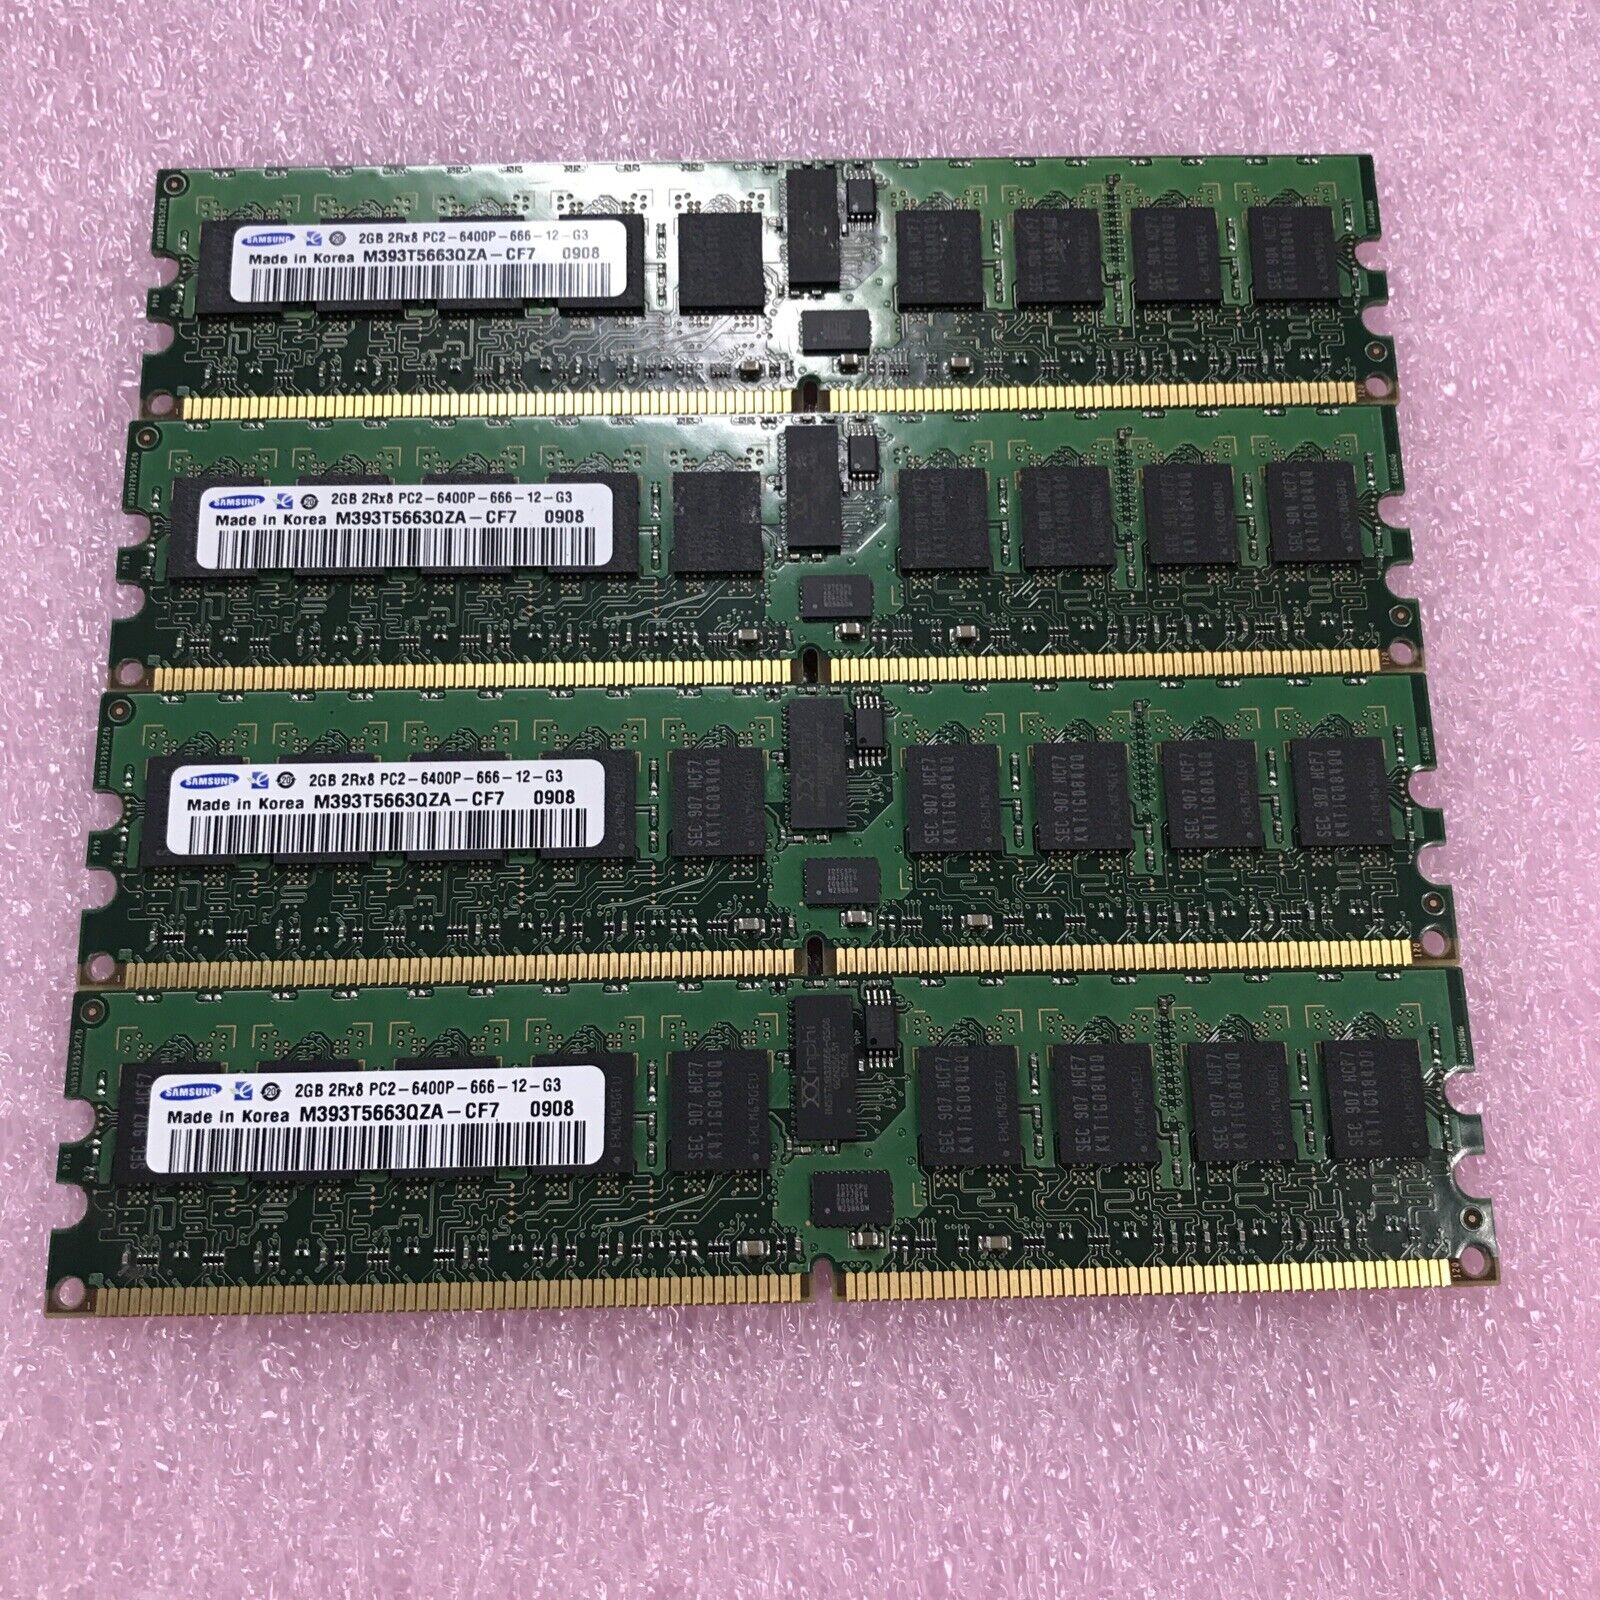 Samsung 8GB Kit 4x2GB 2Rx8 PC2-6400P-666-G3 Server Ram M393T5663QZA